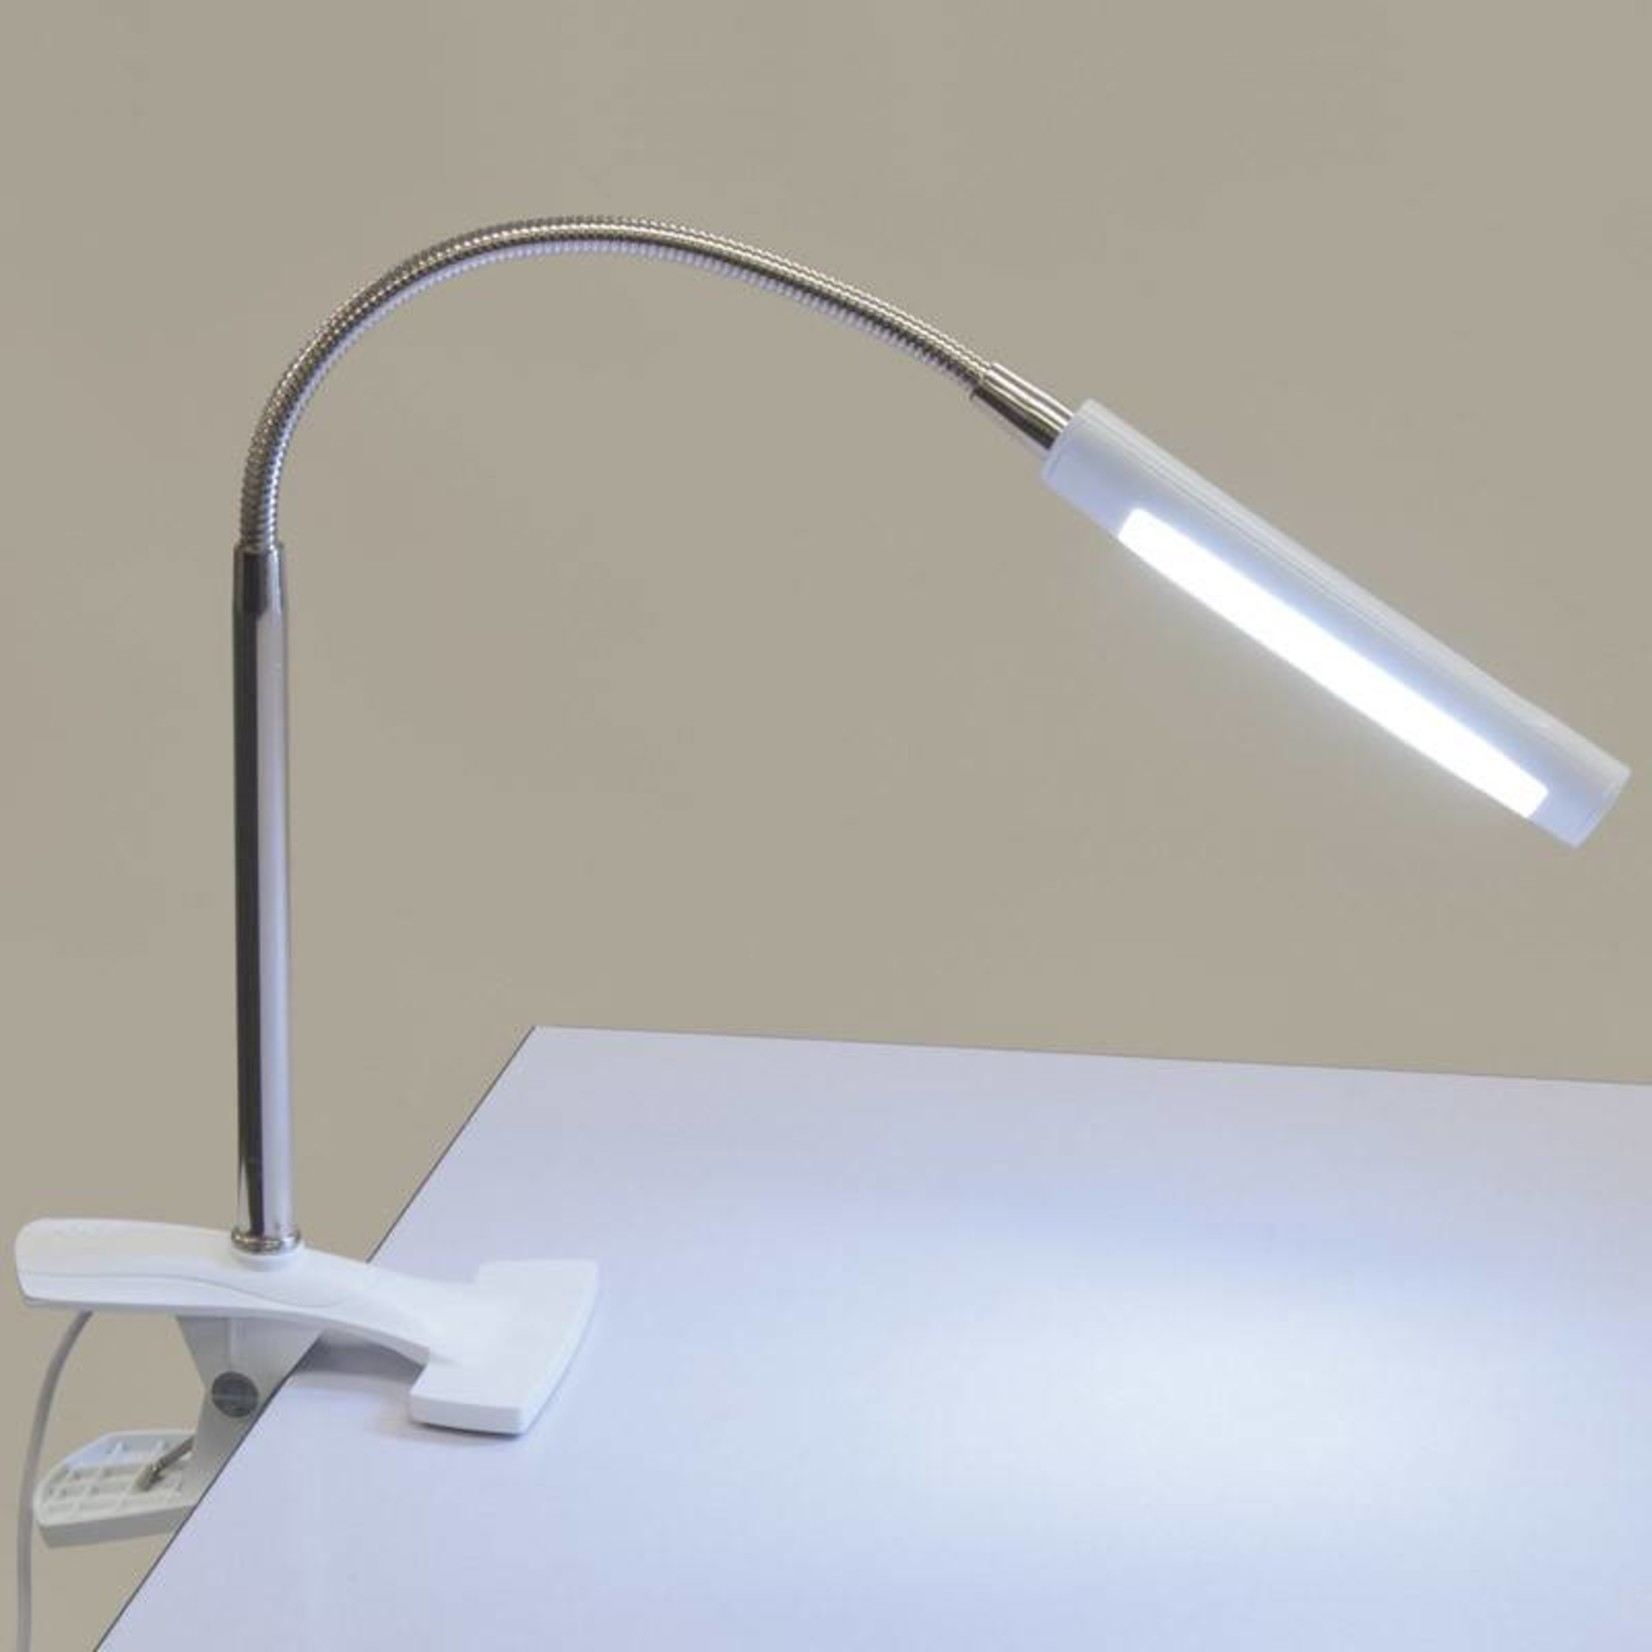 STUDIO DESIGNS STUDIO DESIGNS ART CLAMP LAMP WHITE